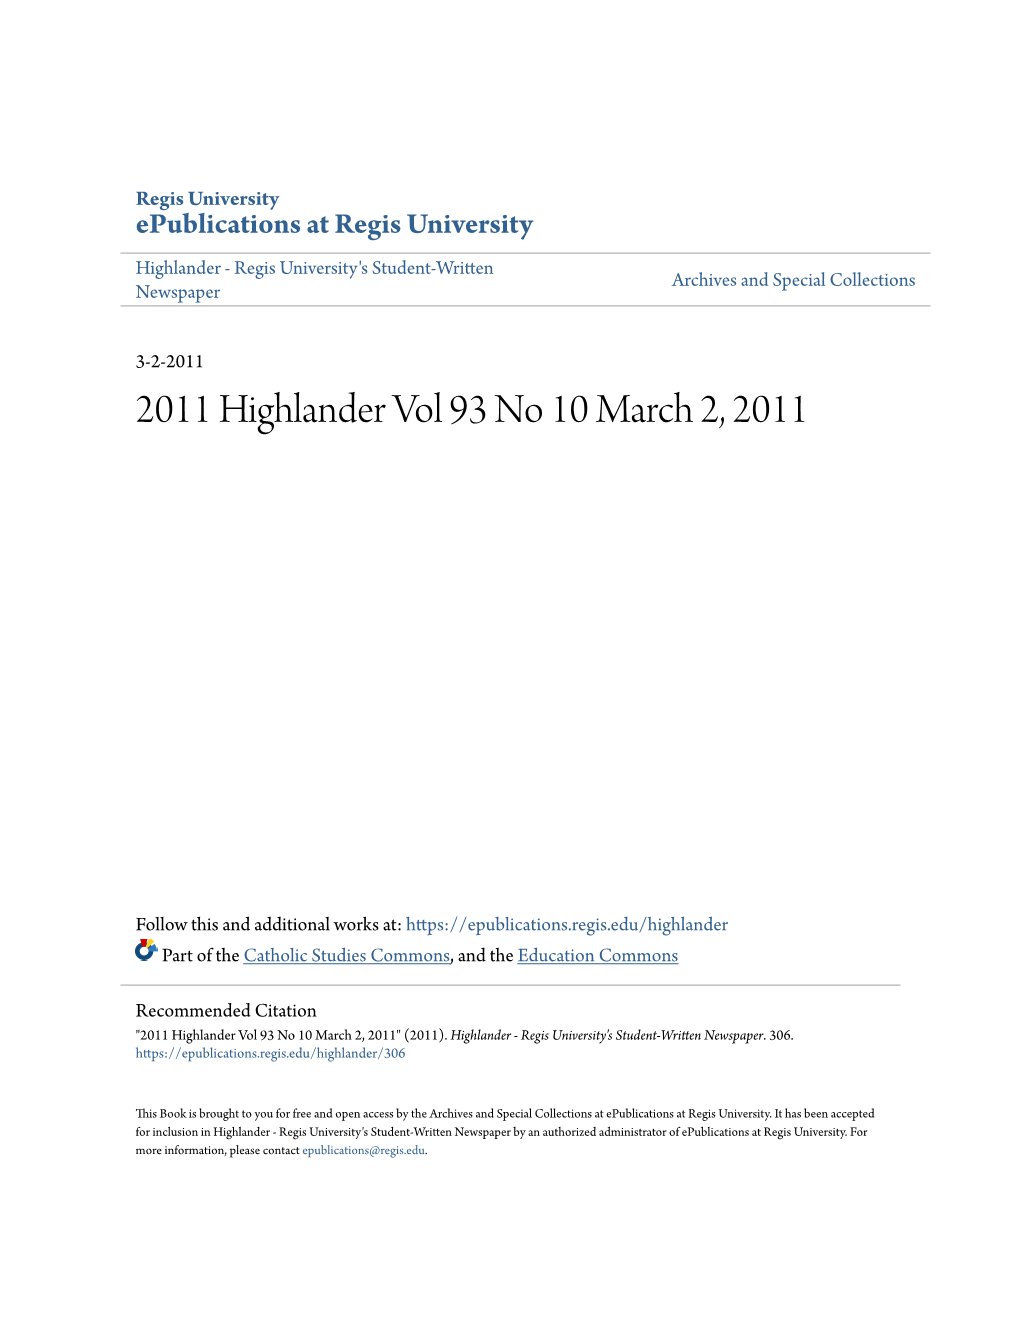 2011 Highlander Vol 93 No 10 March 2, 2011